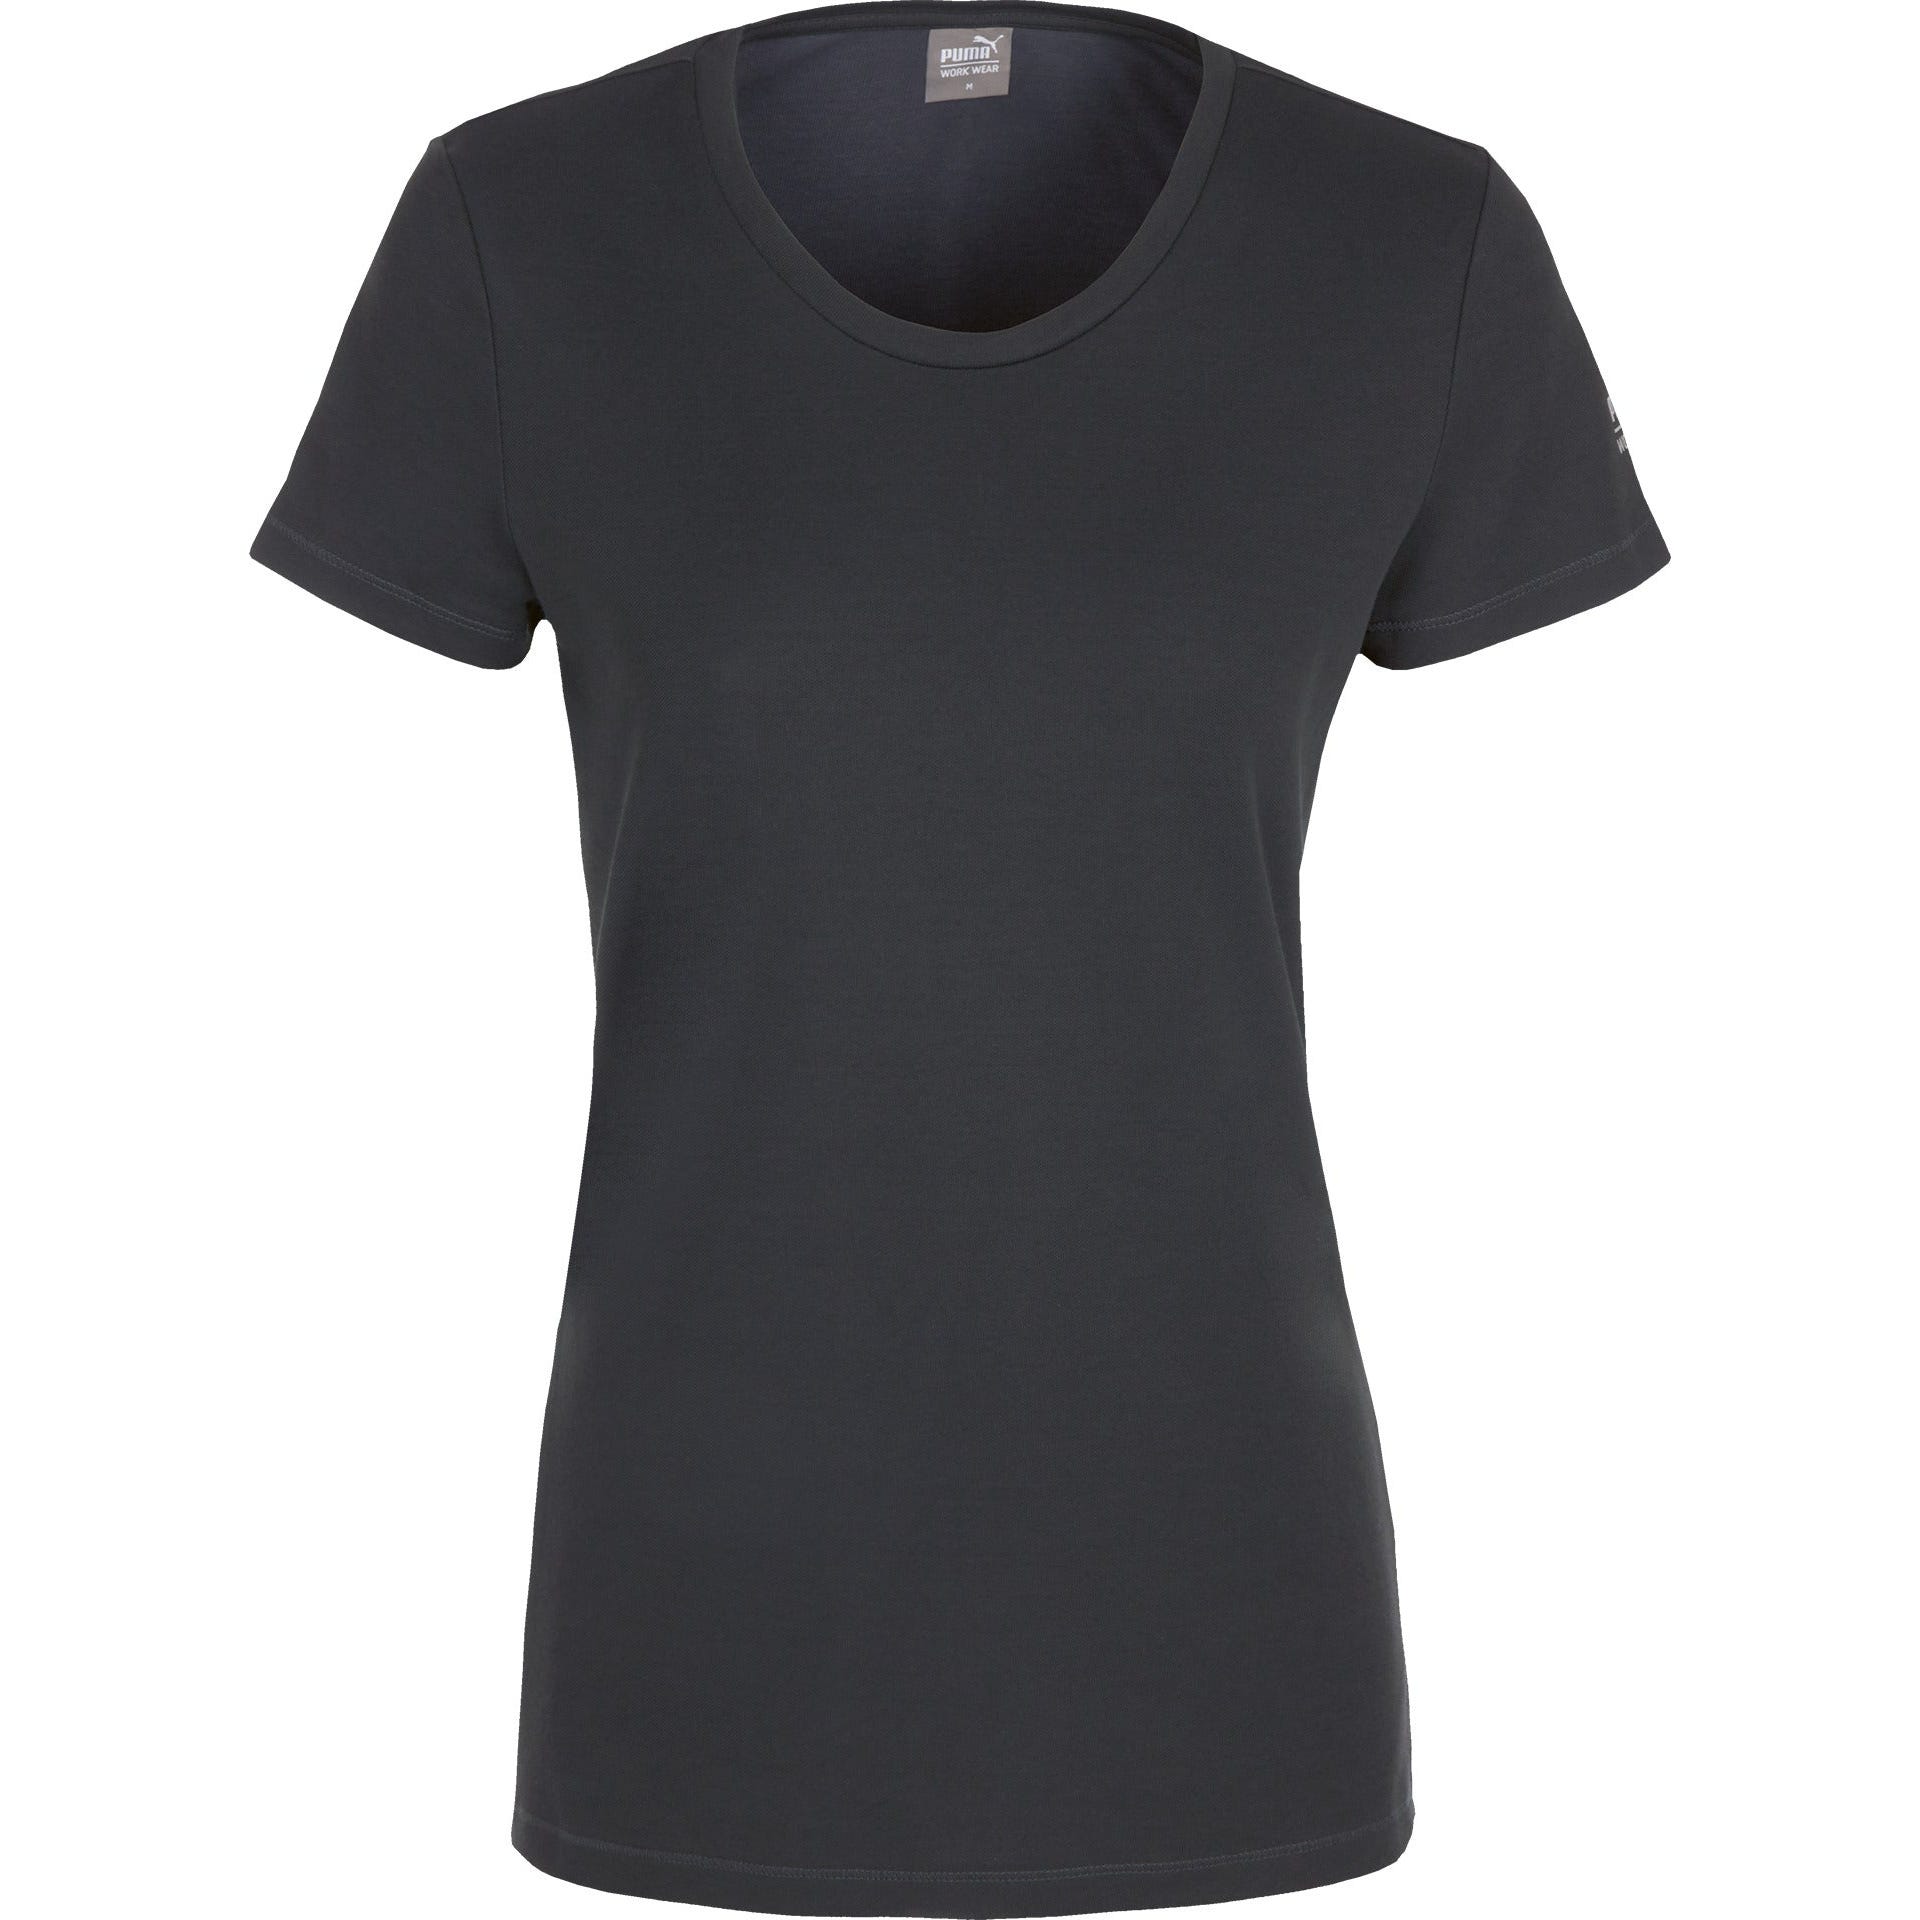 Puma - Tee-shirt de travail col rond pour femmes - Gris - M 3